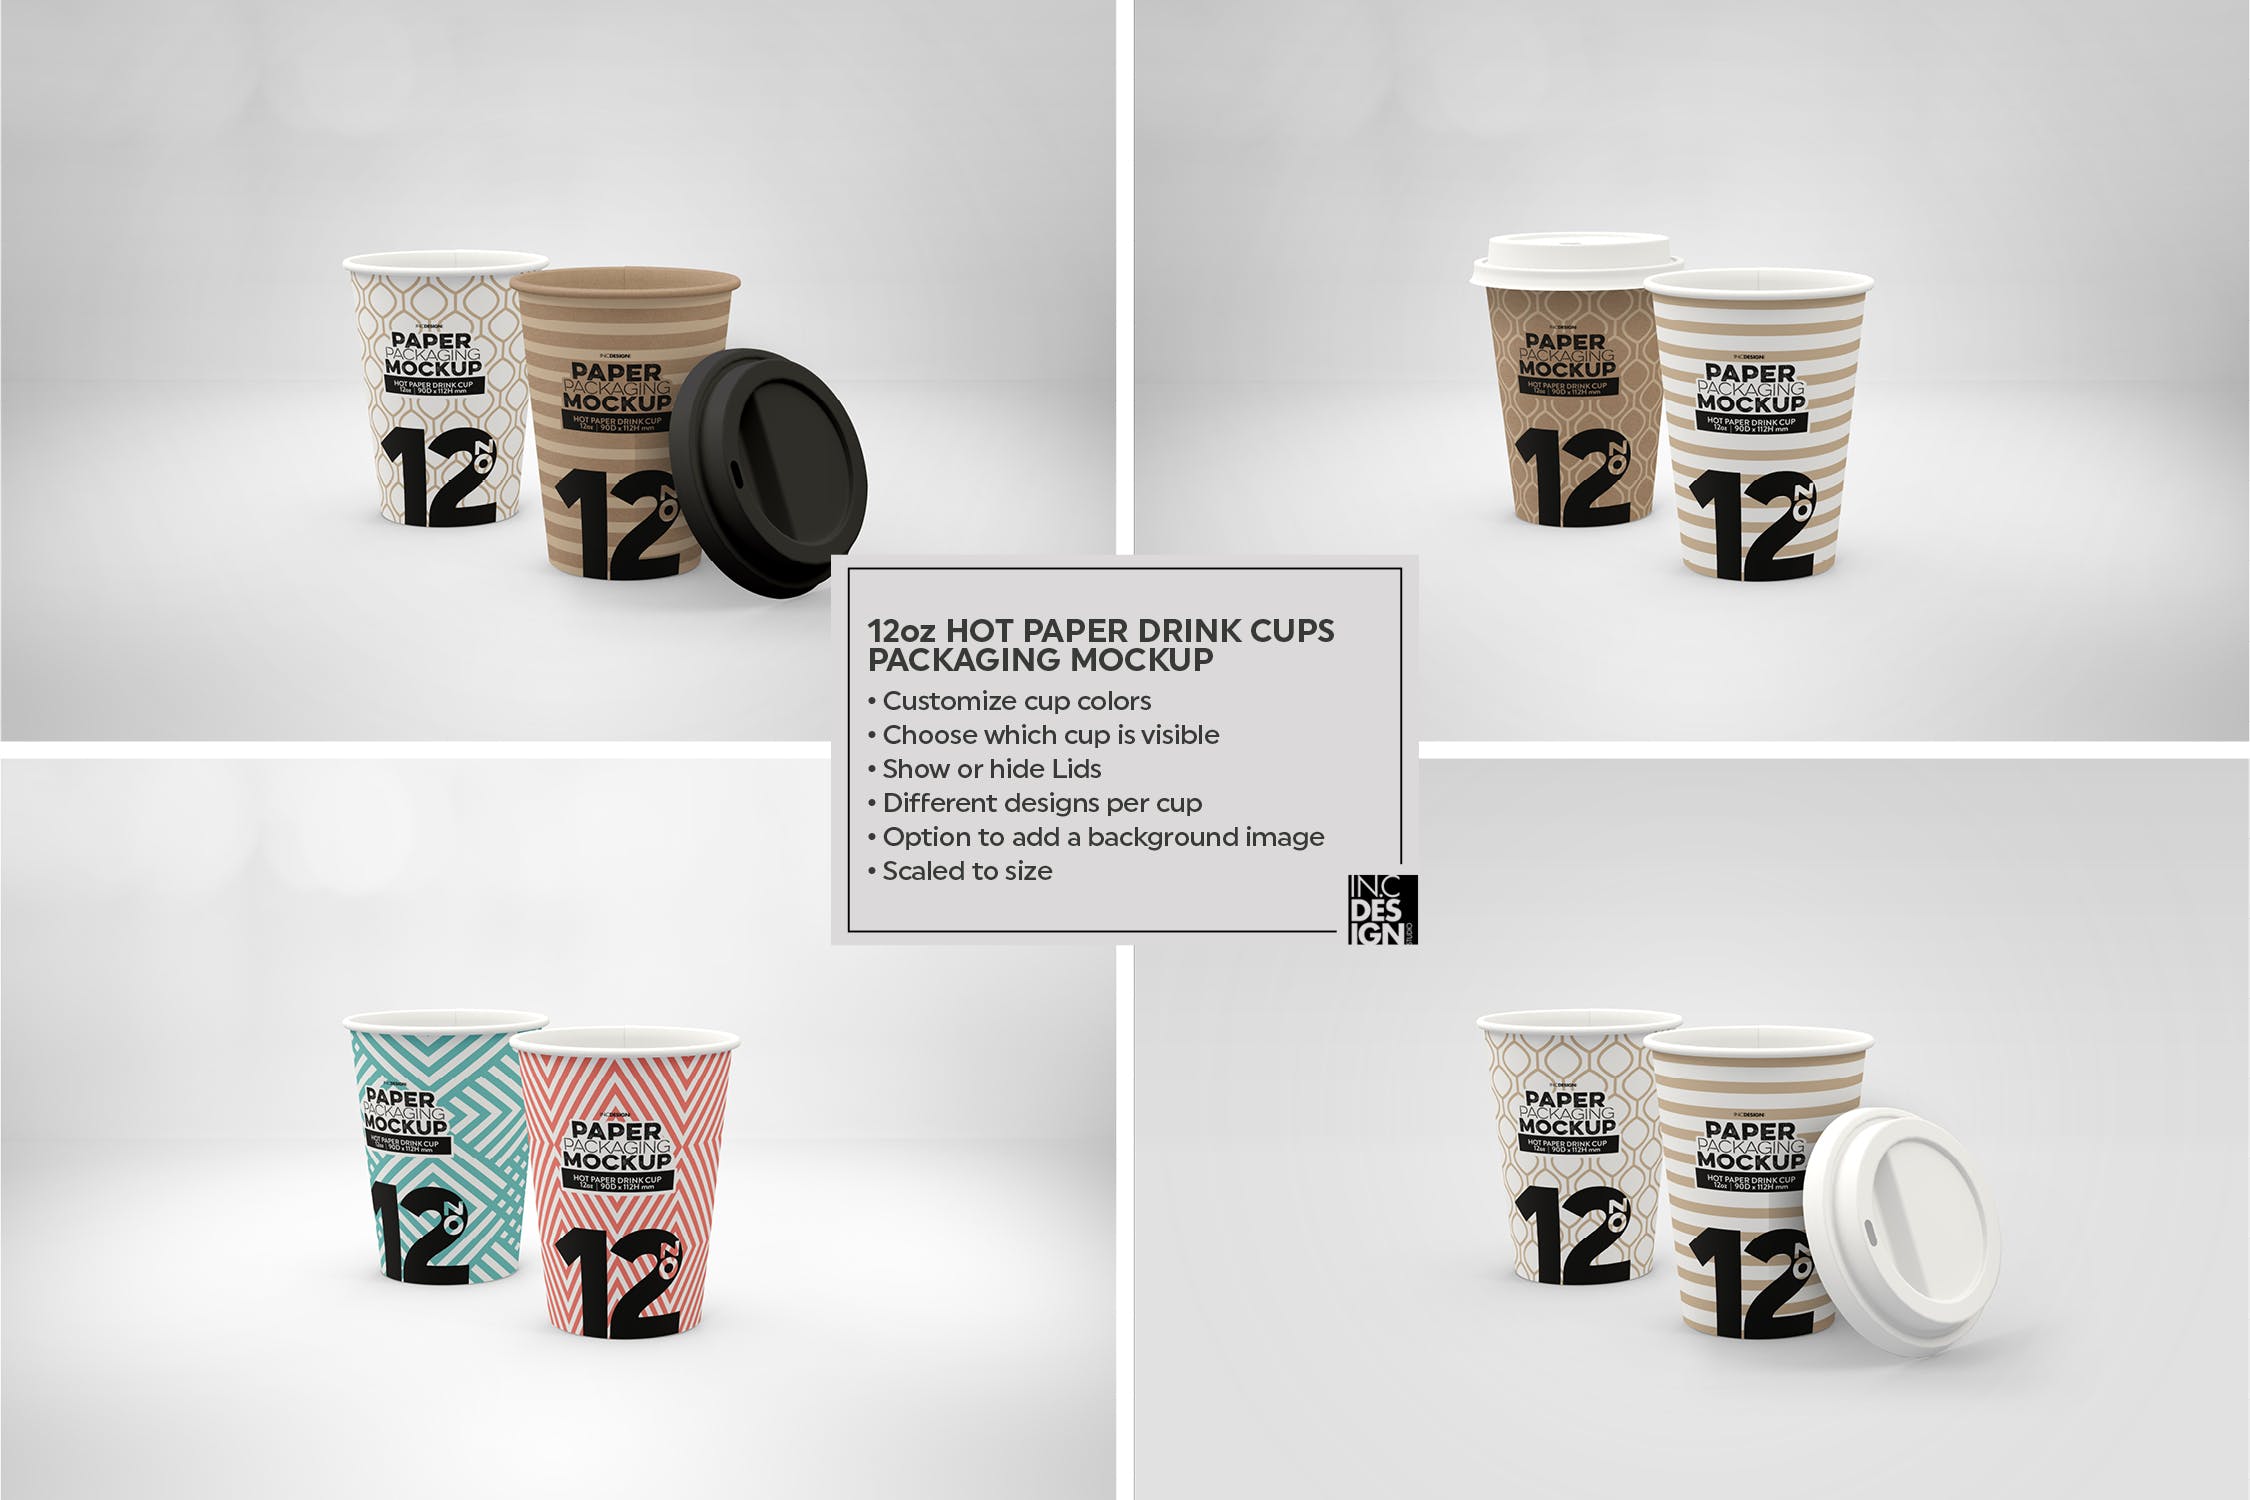 热饮一次性纸杯外观设计素材库精选 Paper Hot Drink Cups Packaging Mockup插图(11)